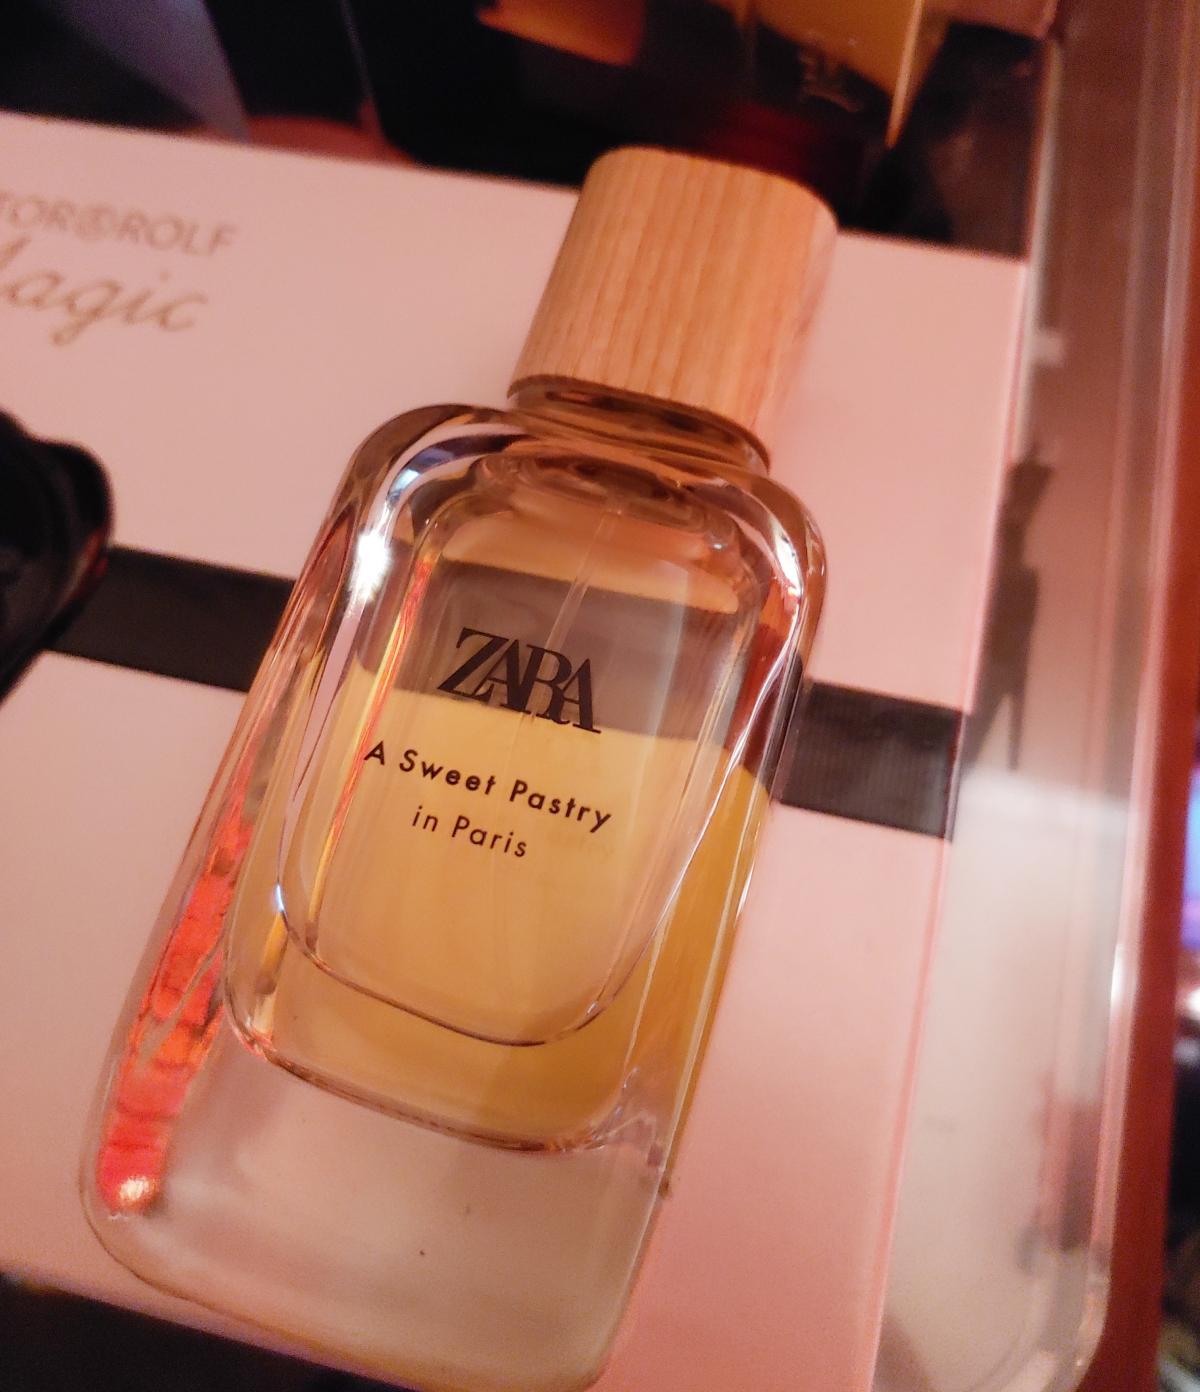 A Sweet Pastry In Paris Zara parfum - un nouveau parfum pour femme 2020